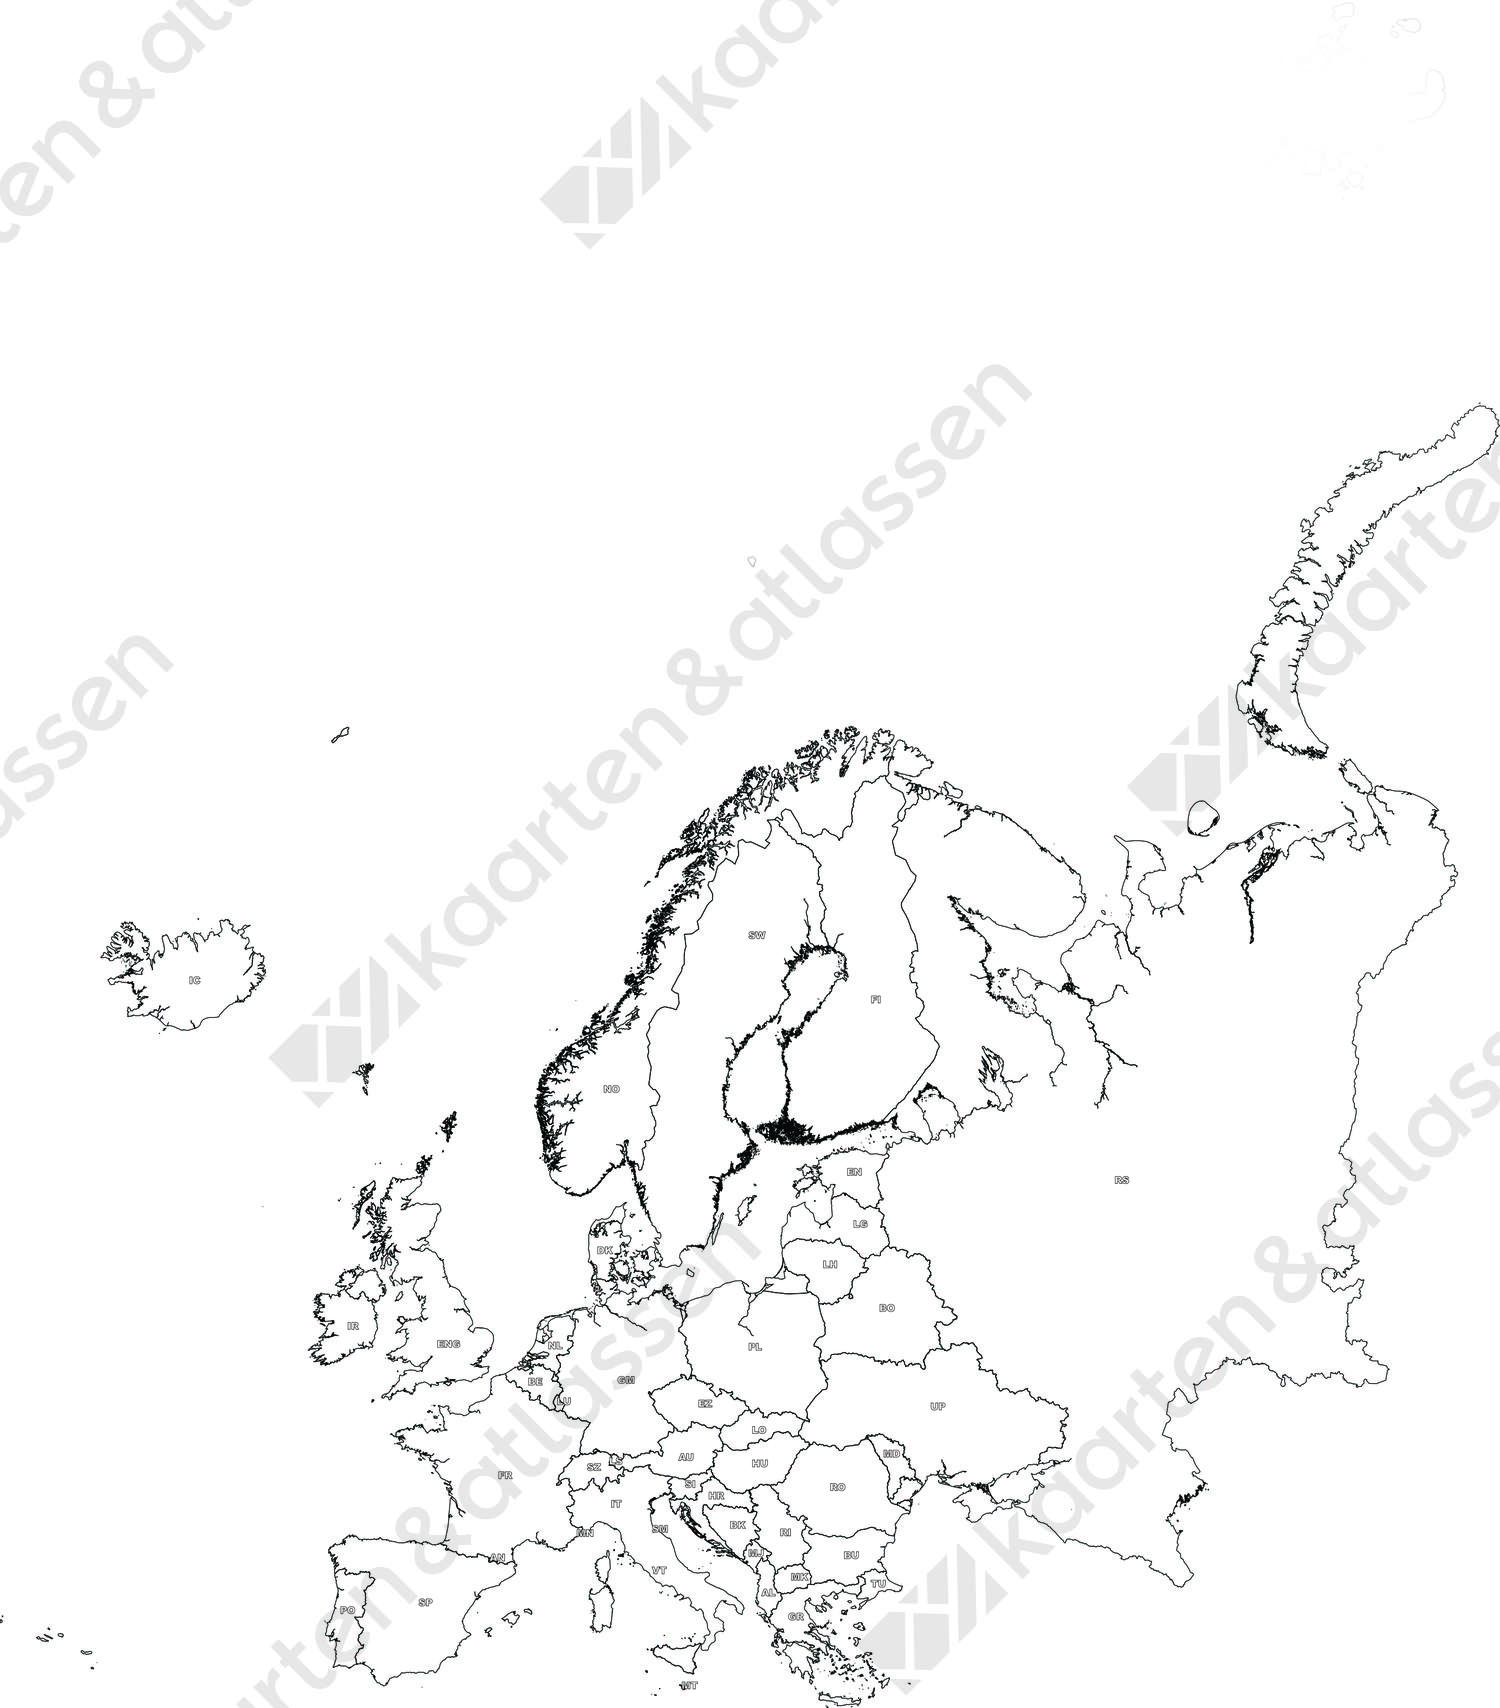 Gratis digitale kaart Europa